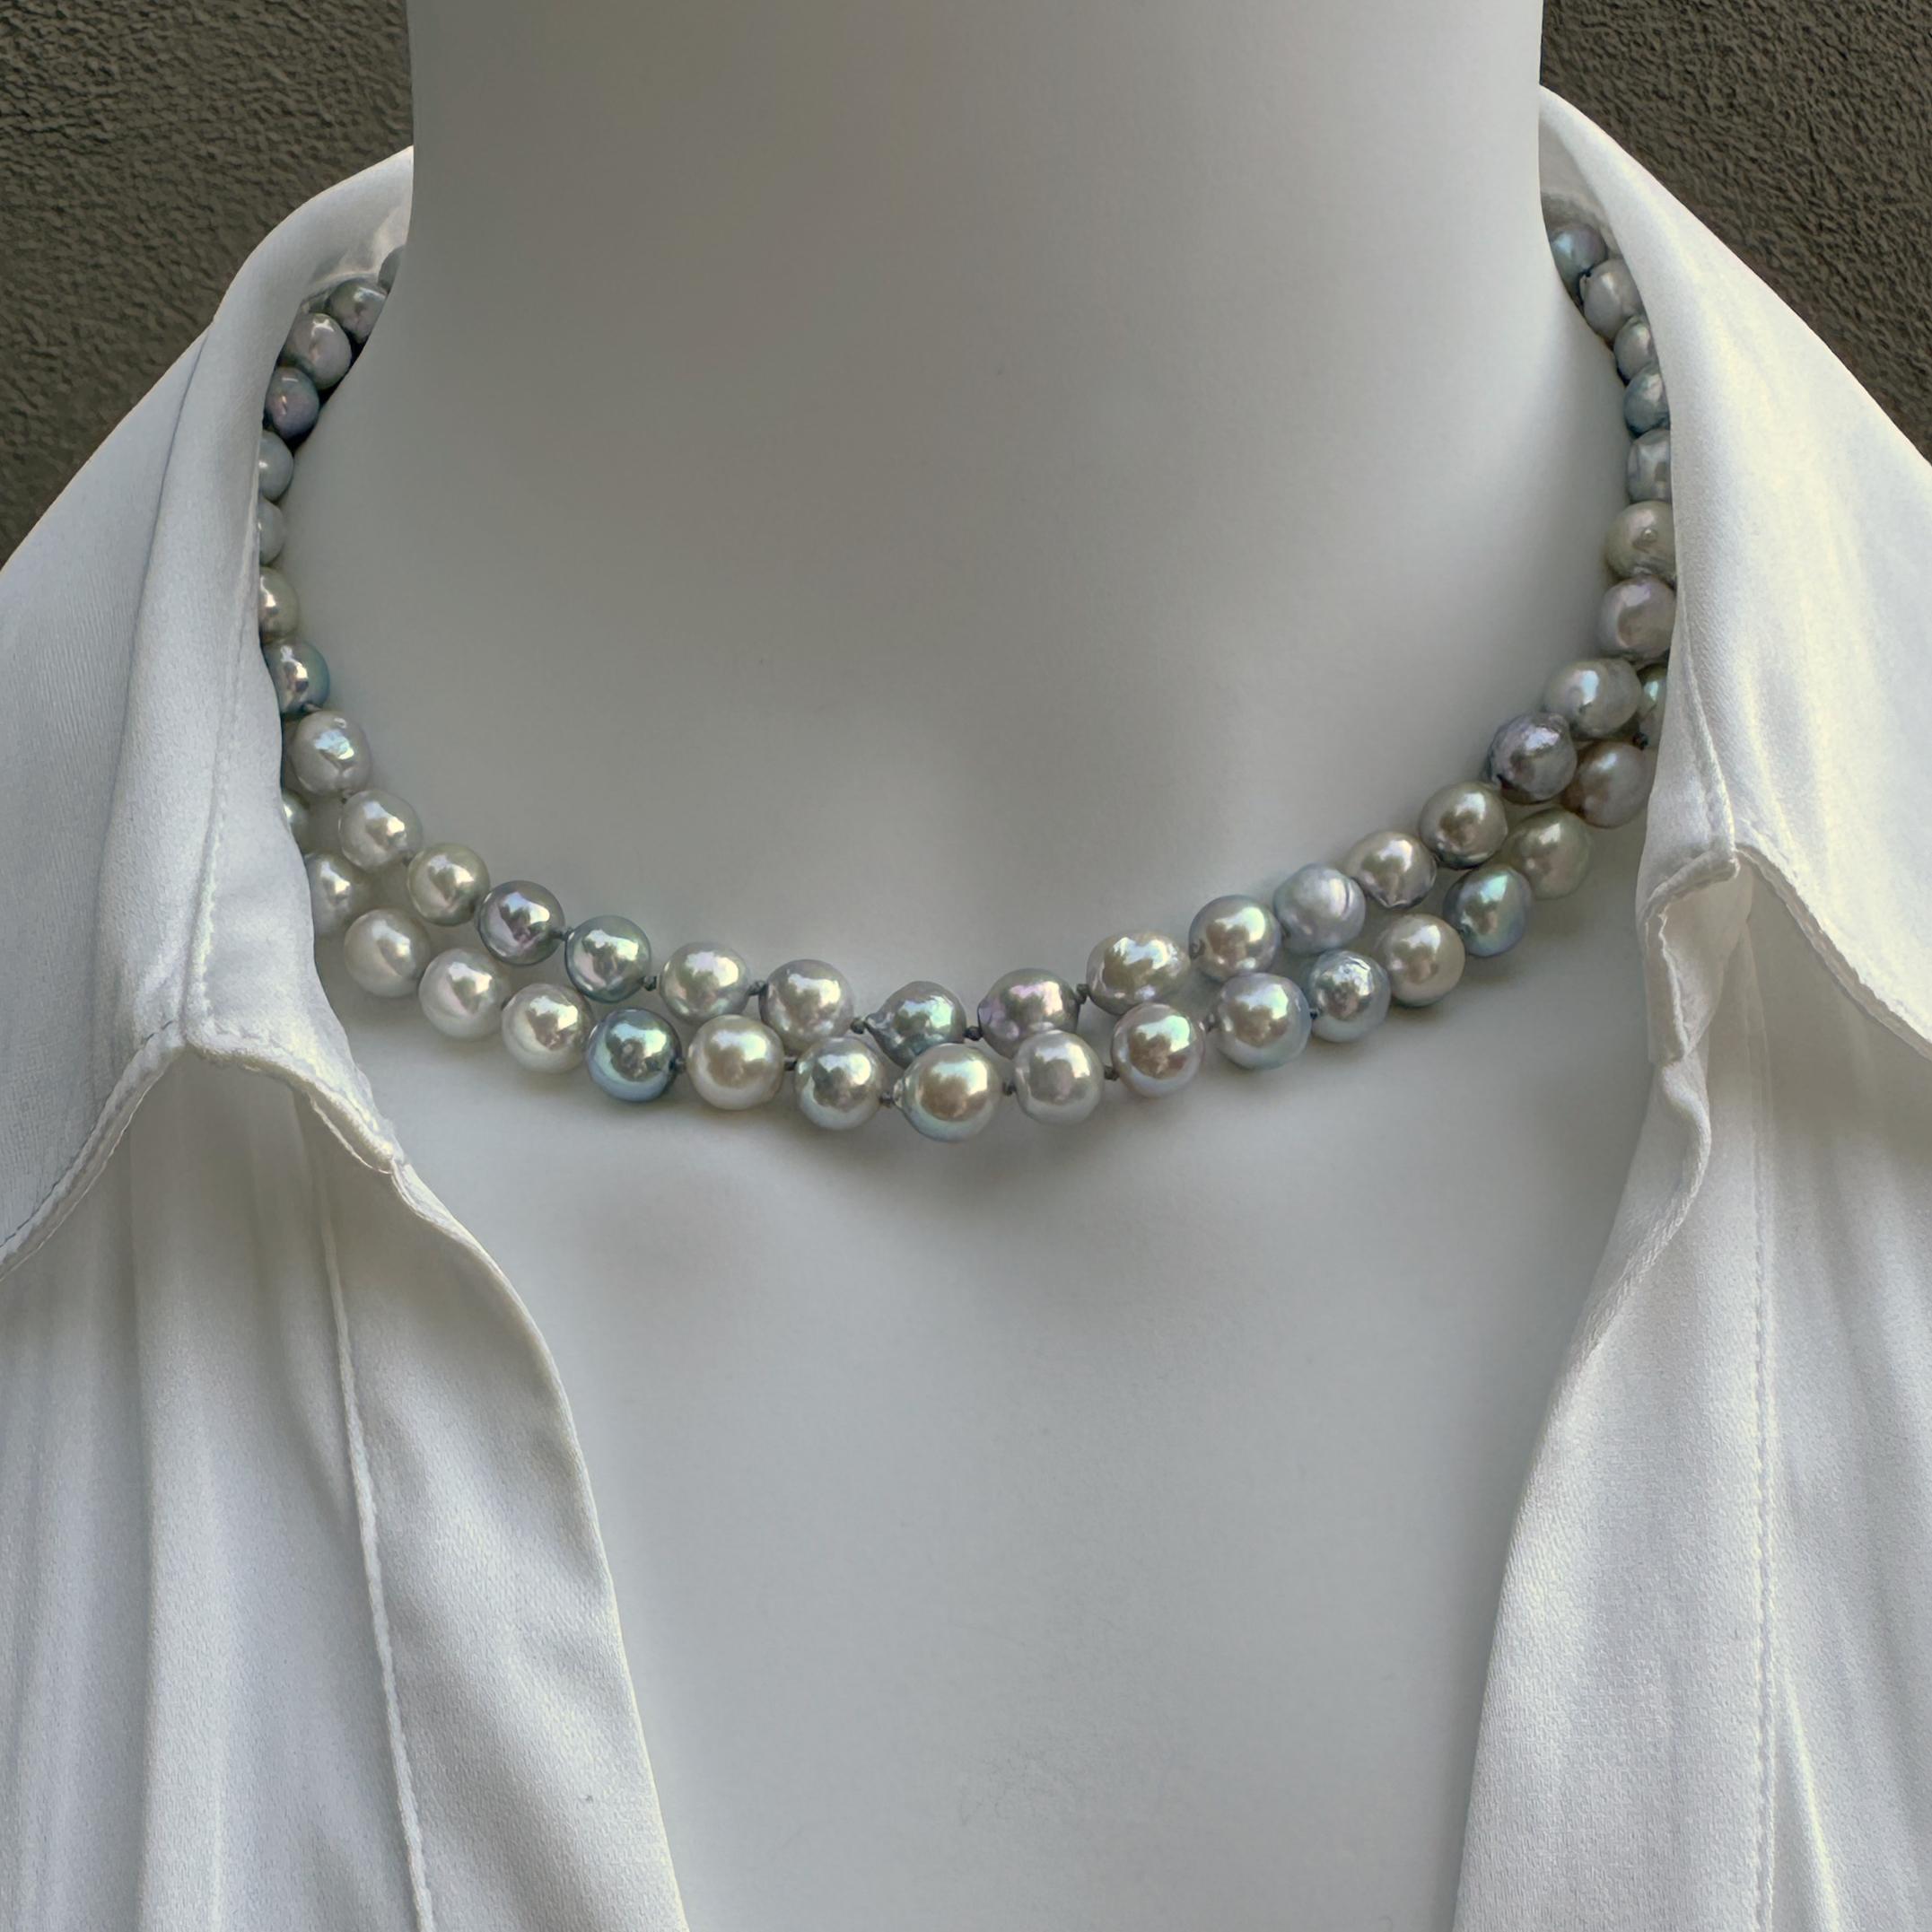 Nous avons obtenu ces perles magnifiques et distinctives lors d'un salon professionnel* en juillet 2023.  Il s'agit de perles Akoya d'eau de mer cultivées, d'un lustre exceptionnellement élevé et d'une grande variété de couleurs glaciales - comme